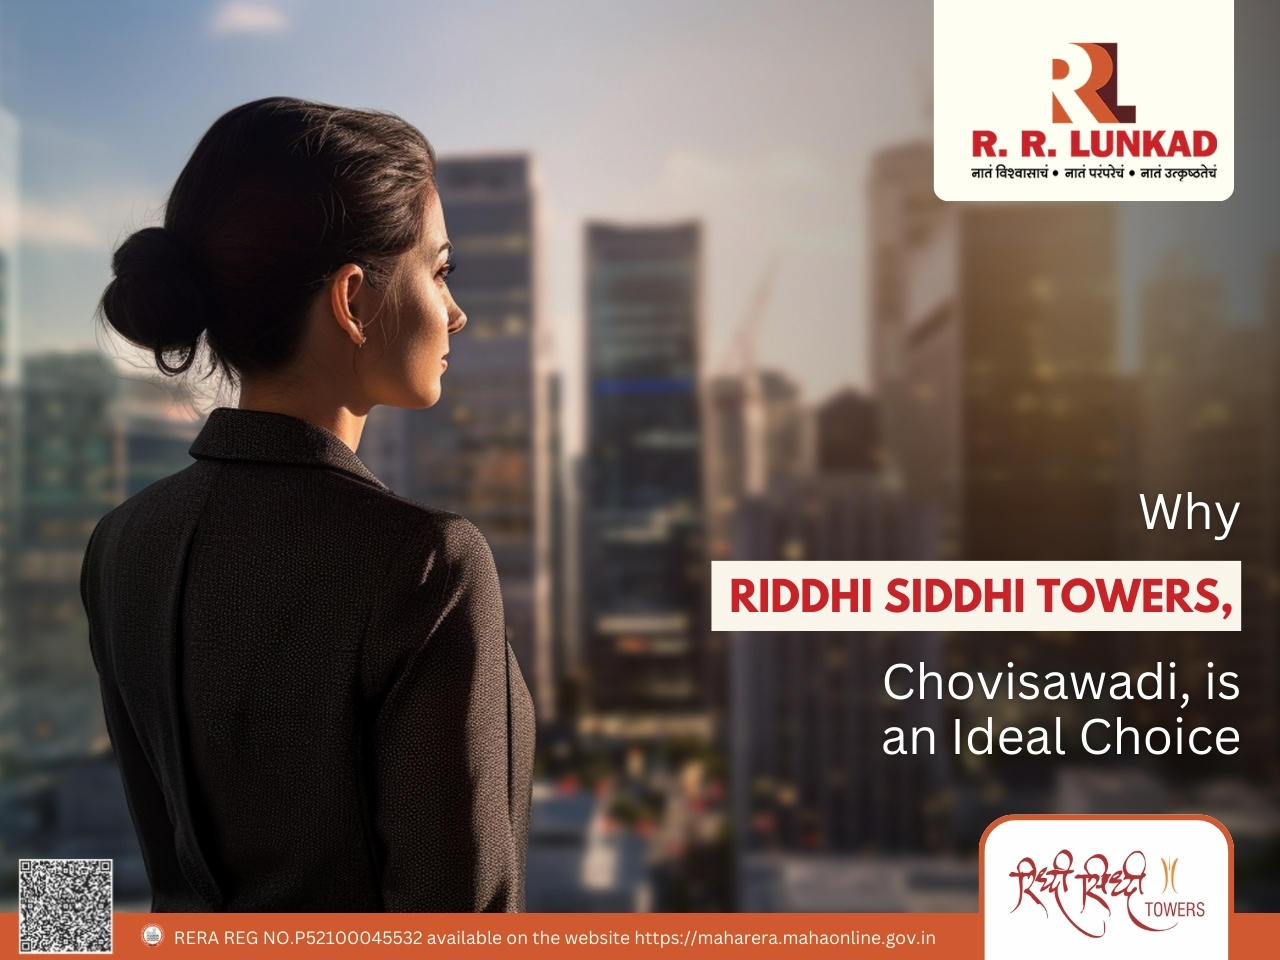 Riddhi Siddhi Towers, Chovisawadi